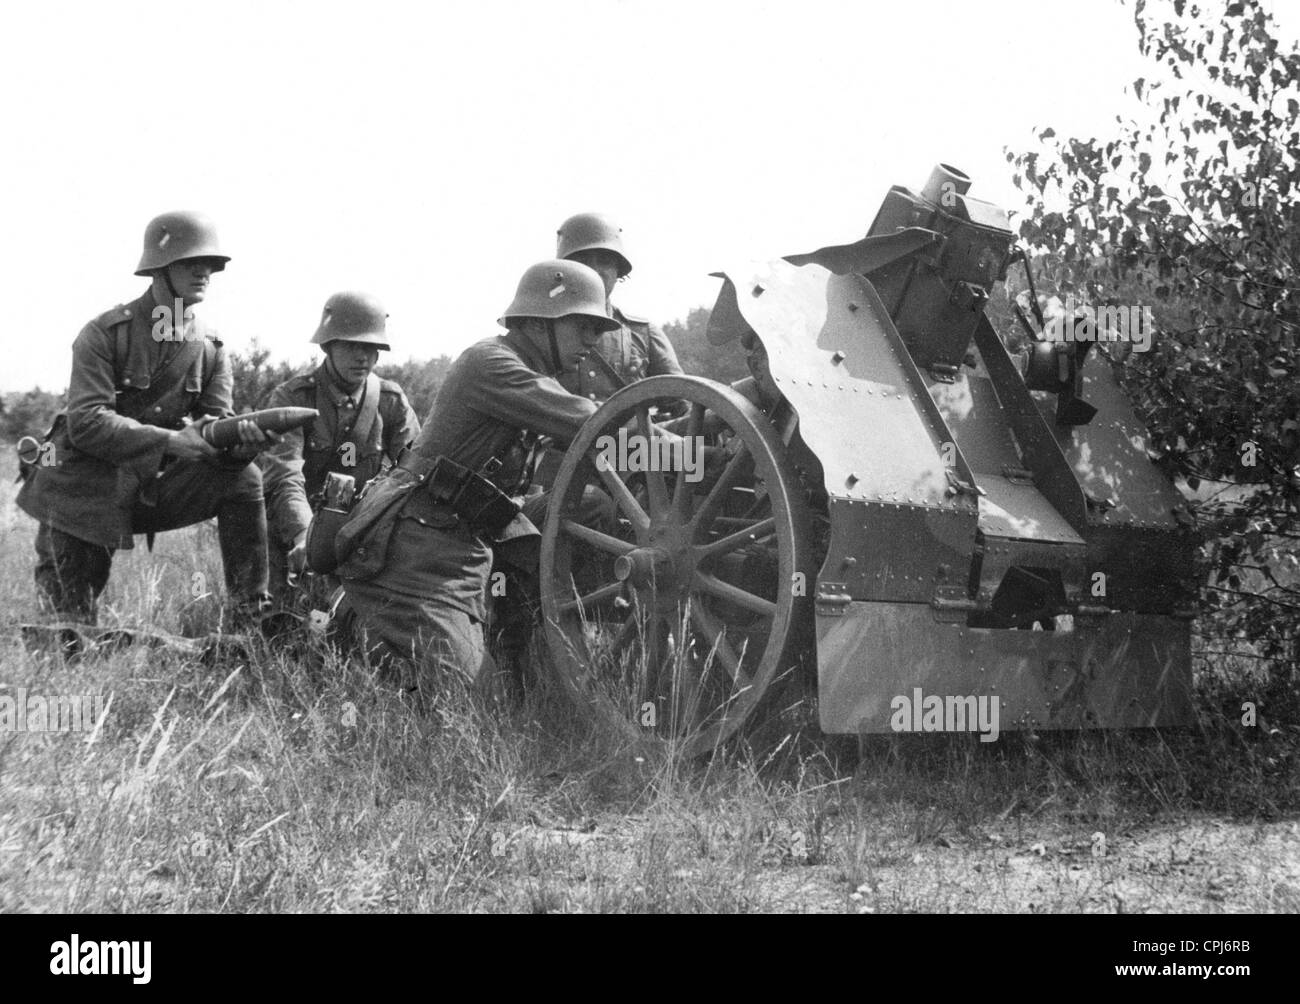 Soldats allemands avec un canon d'infanterie, 1934 Banque D'Images